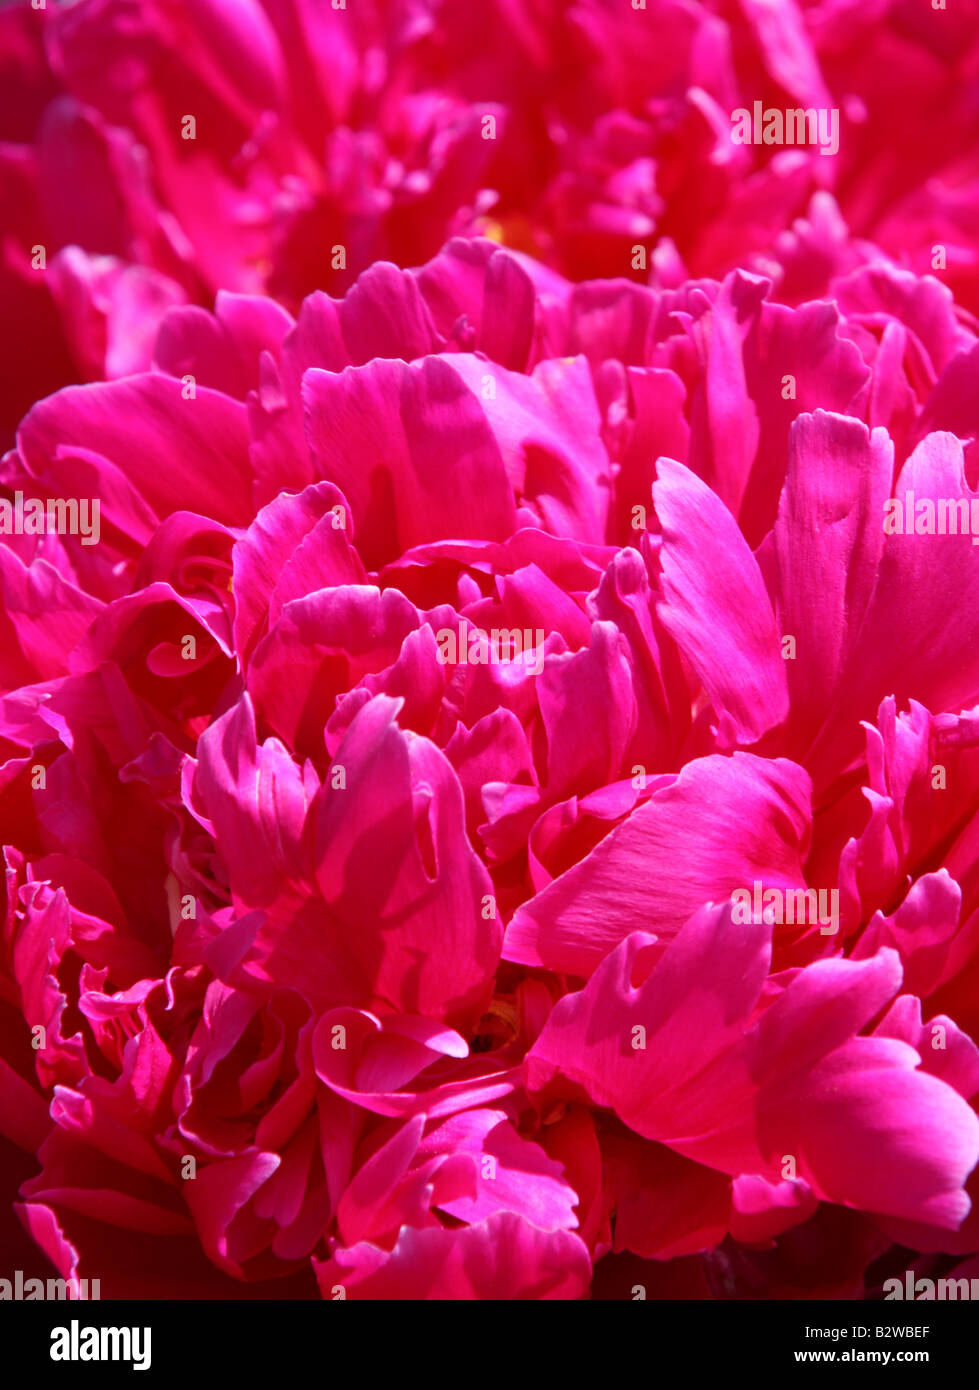 Closeup of peony petals Stock Photo